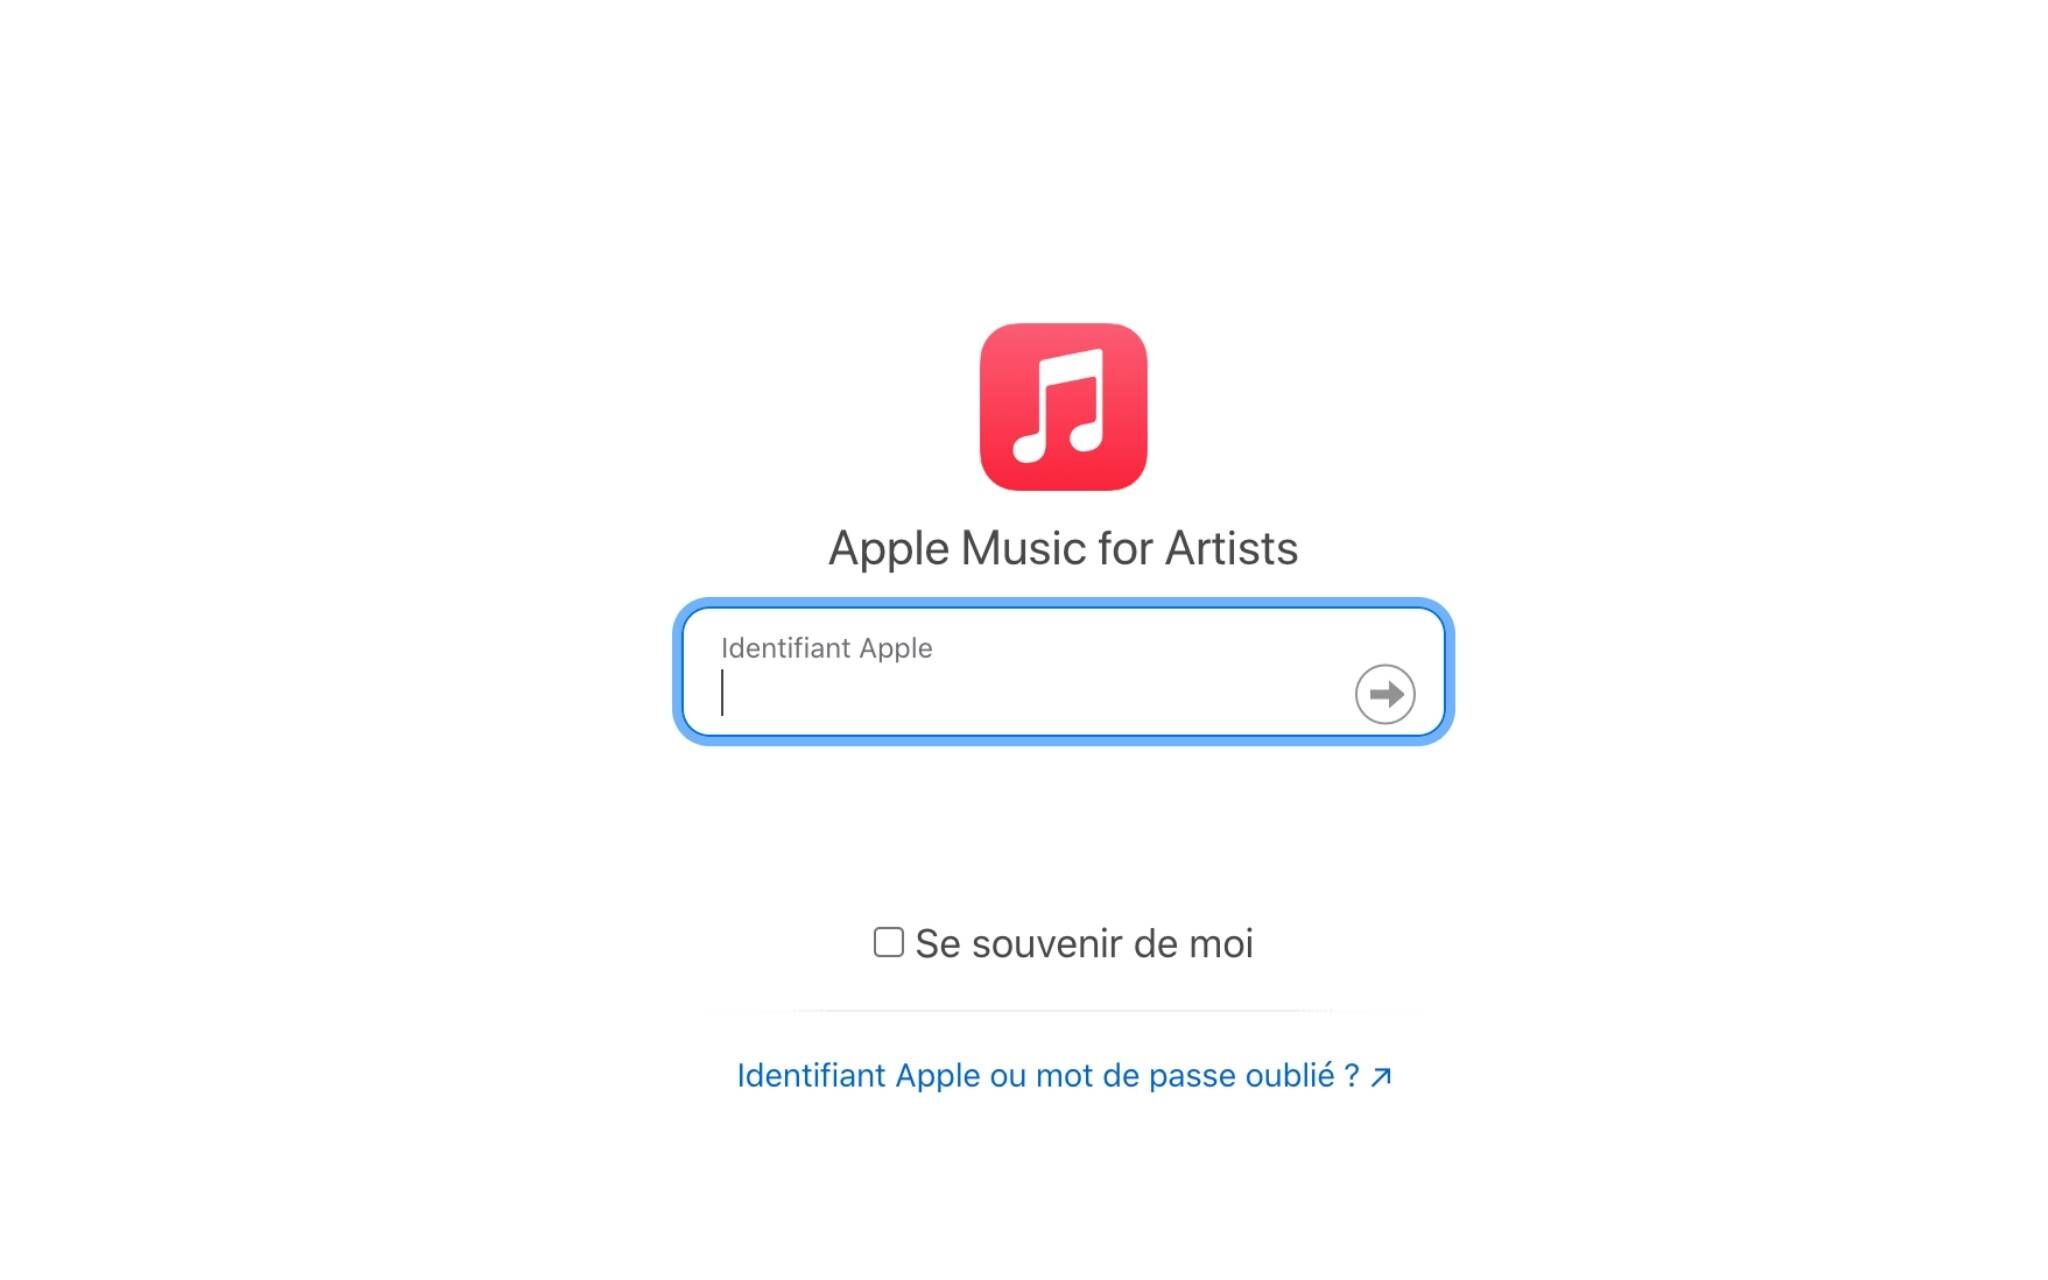 Página de acesso da Apple Music for Artists